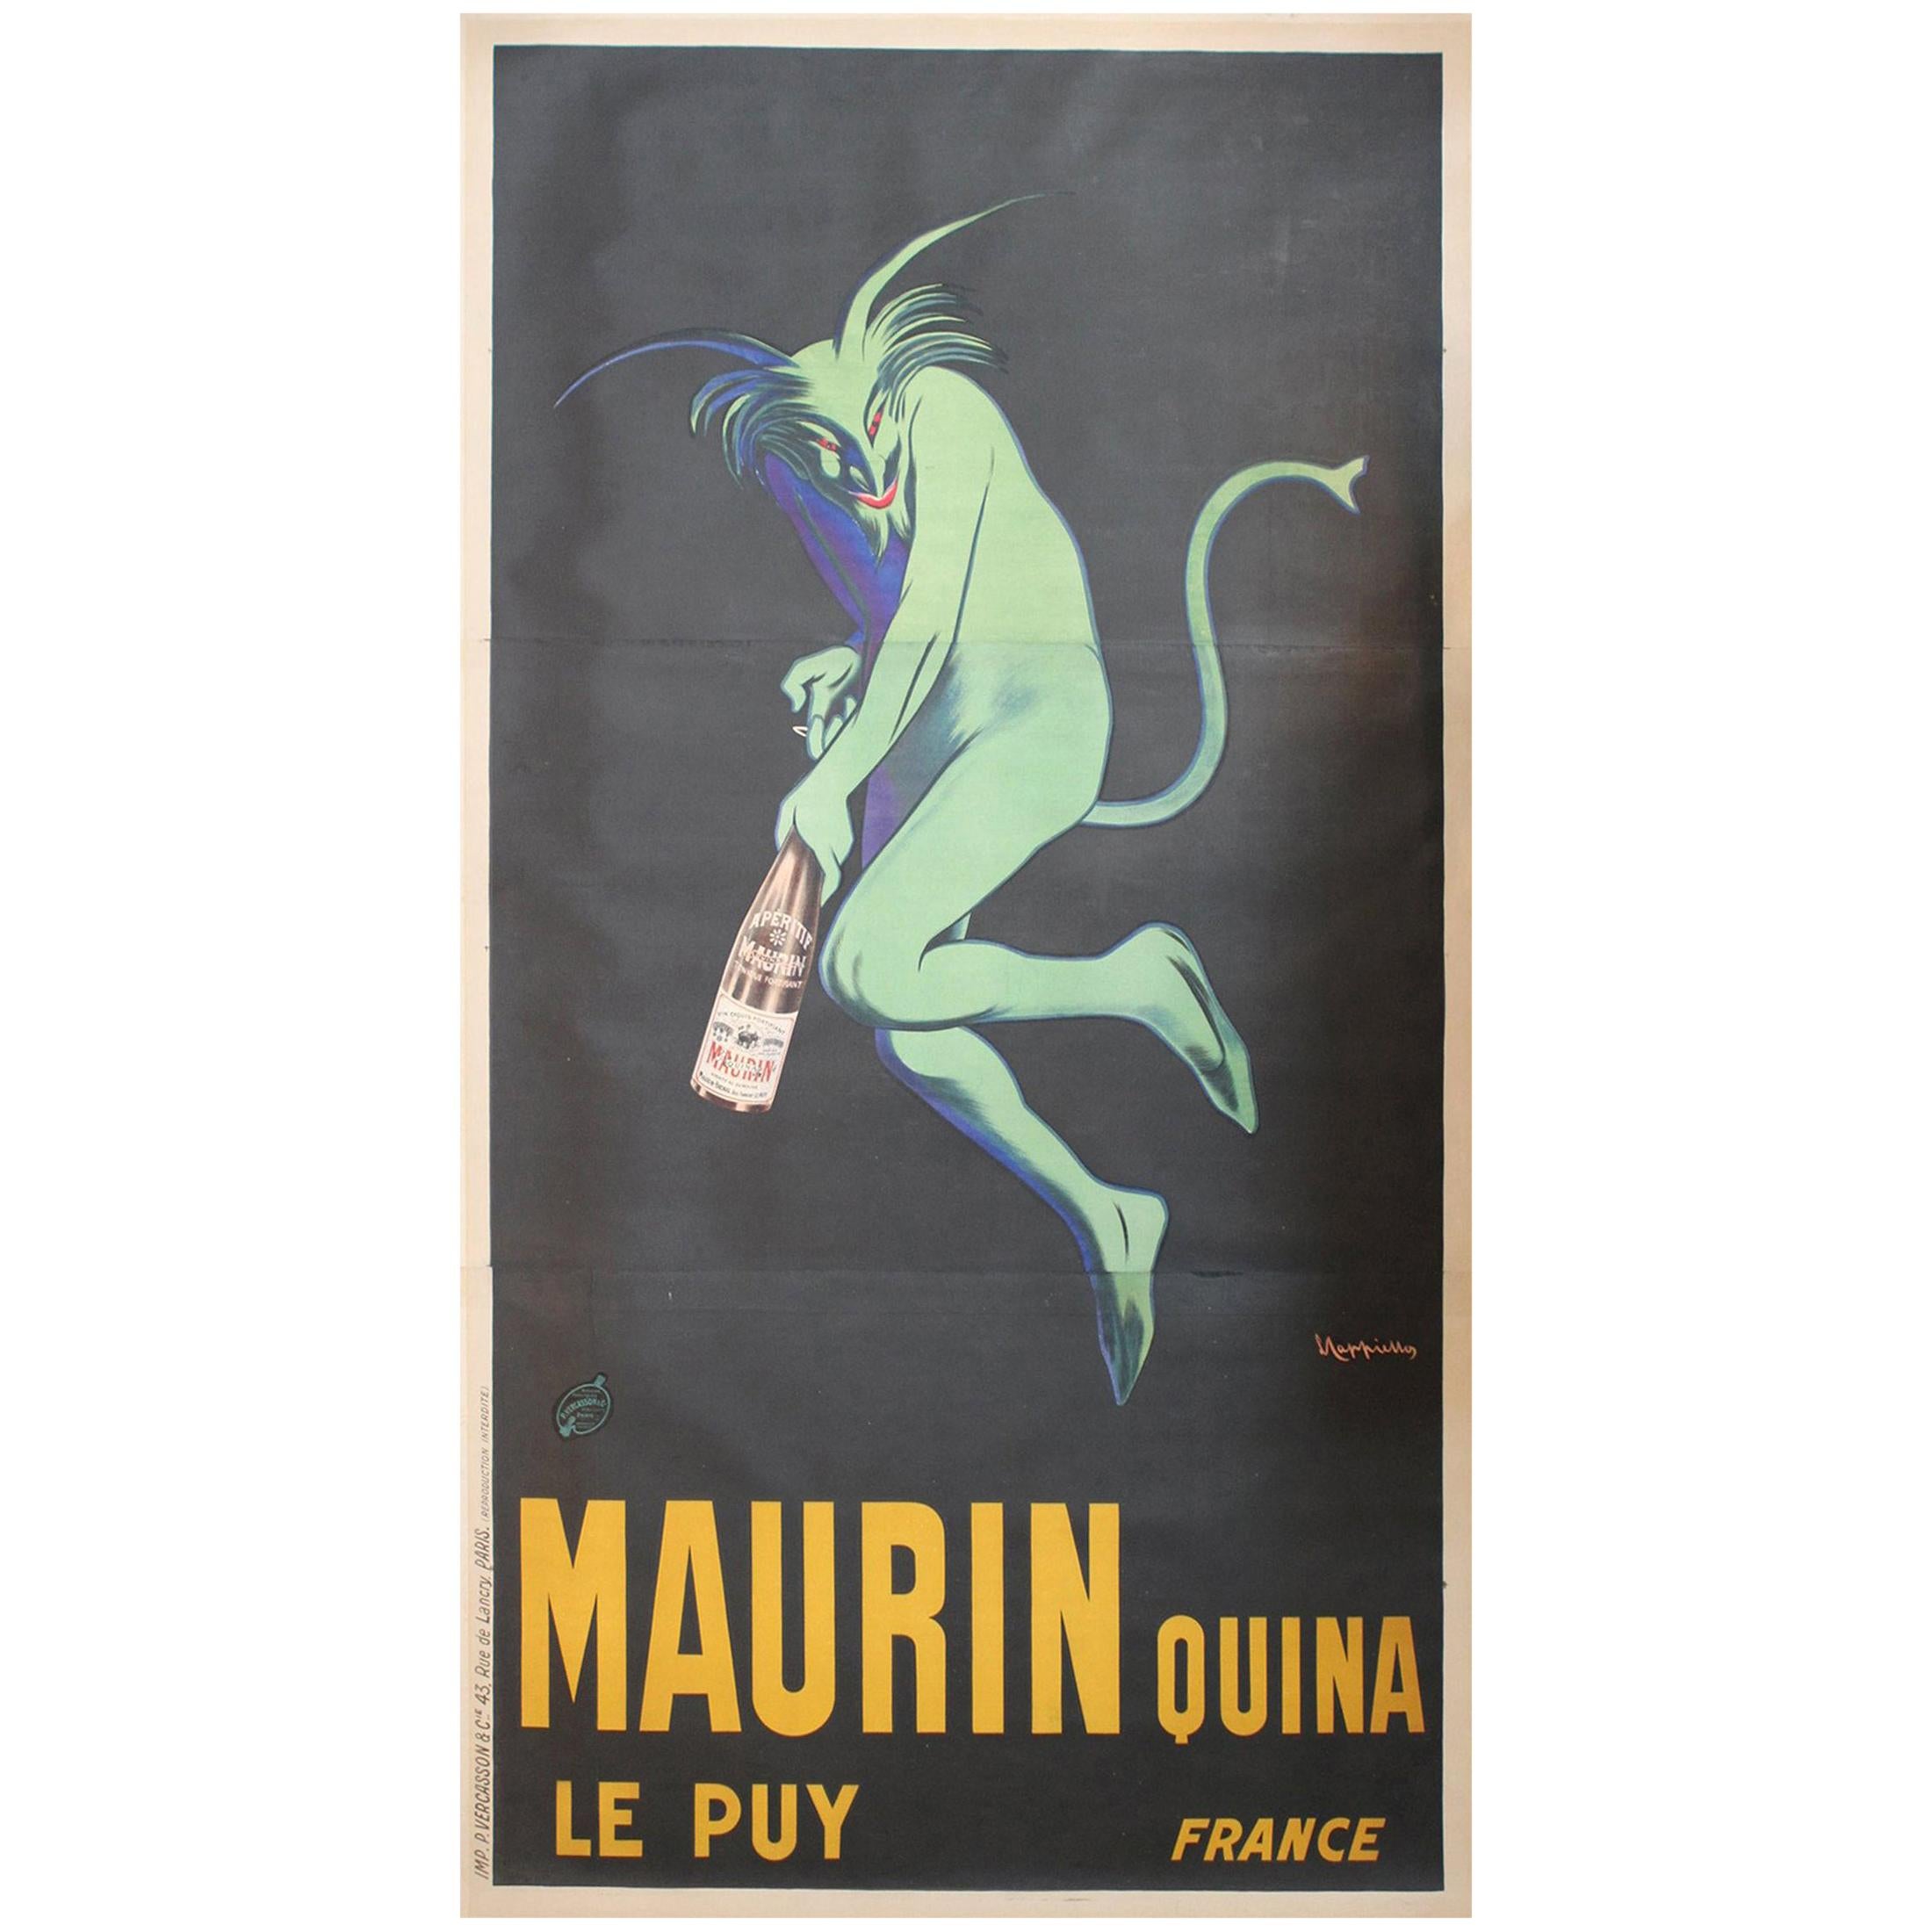 Monumentales Originalplakat "Maurin Quina Ley Puy" aus Frankreich, ideal für Weinschenke / Bar